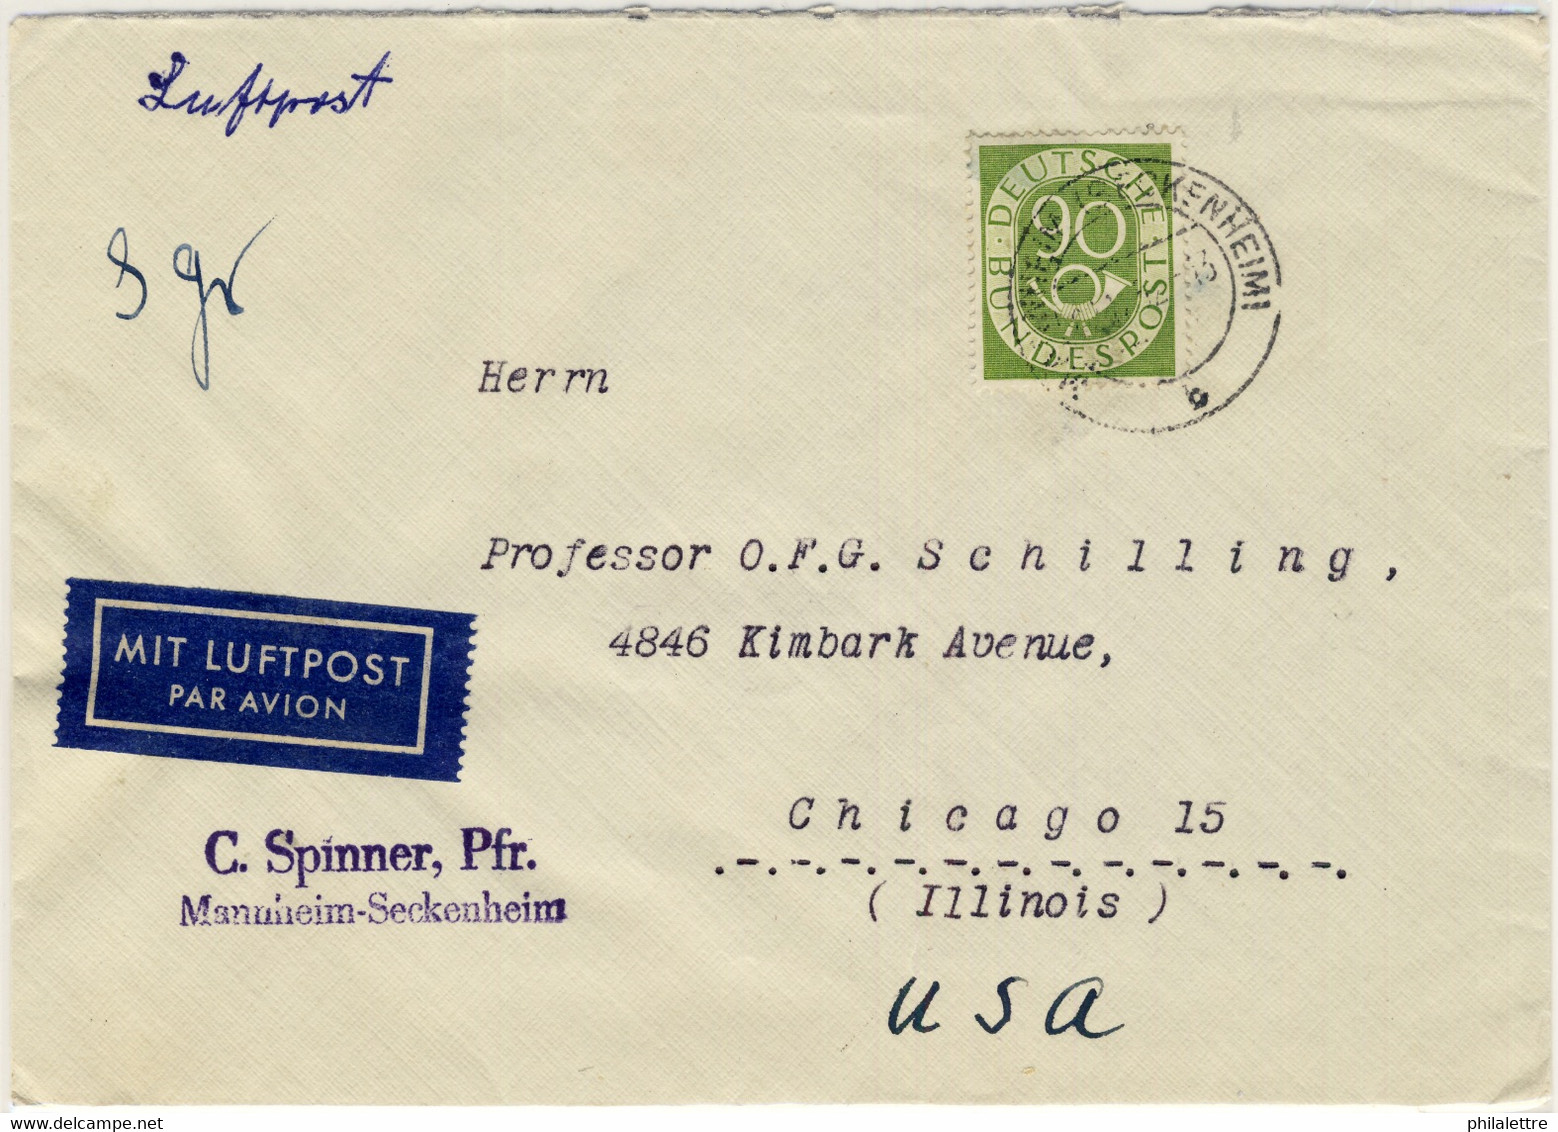 ALLEMAGNE / DEUTSCHLAND - 1952 Posthorn 90pf Einzelfrankatur Mi.138 Auf Luftbrief Aus Mannheim Nach USA - Selten - Lettres & Documents